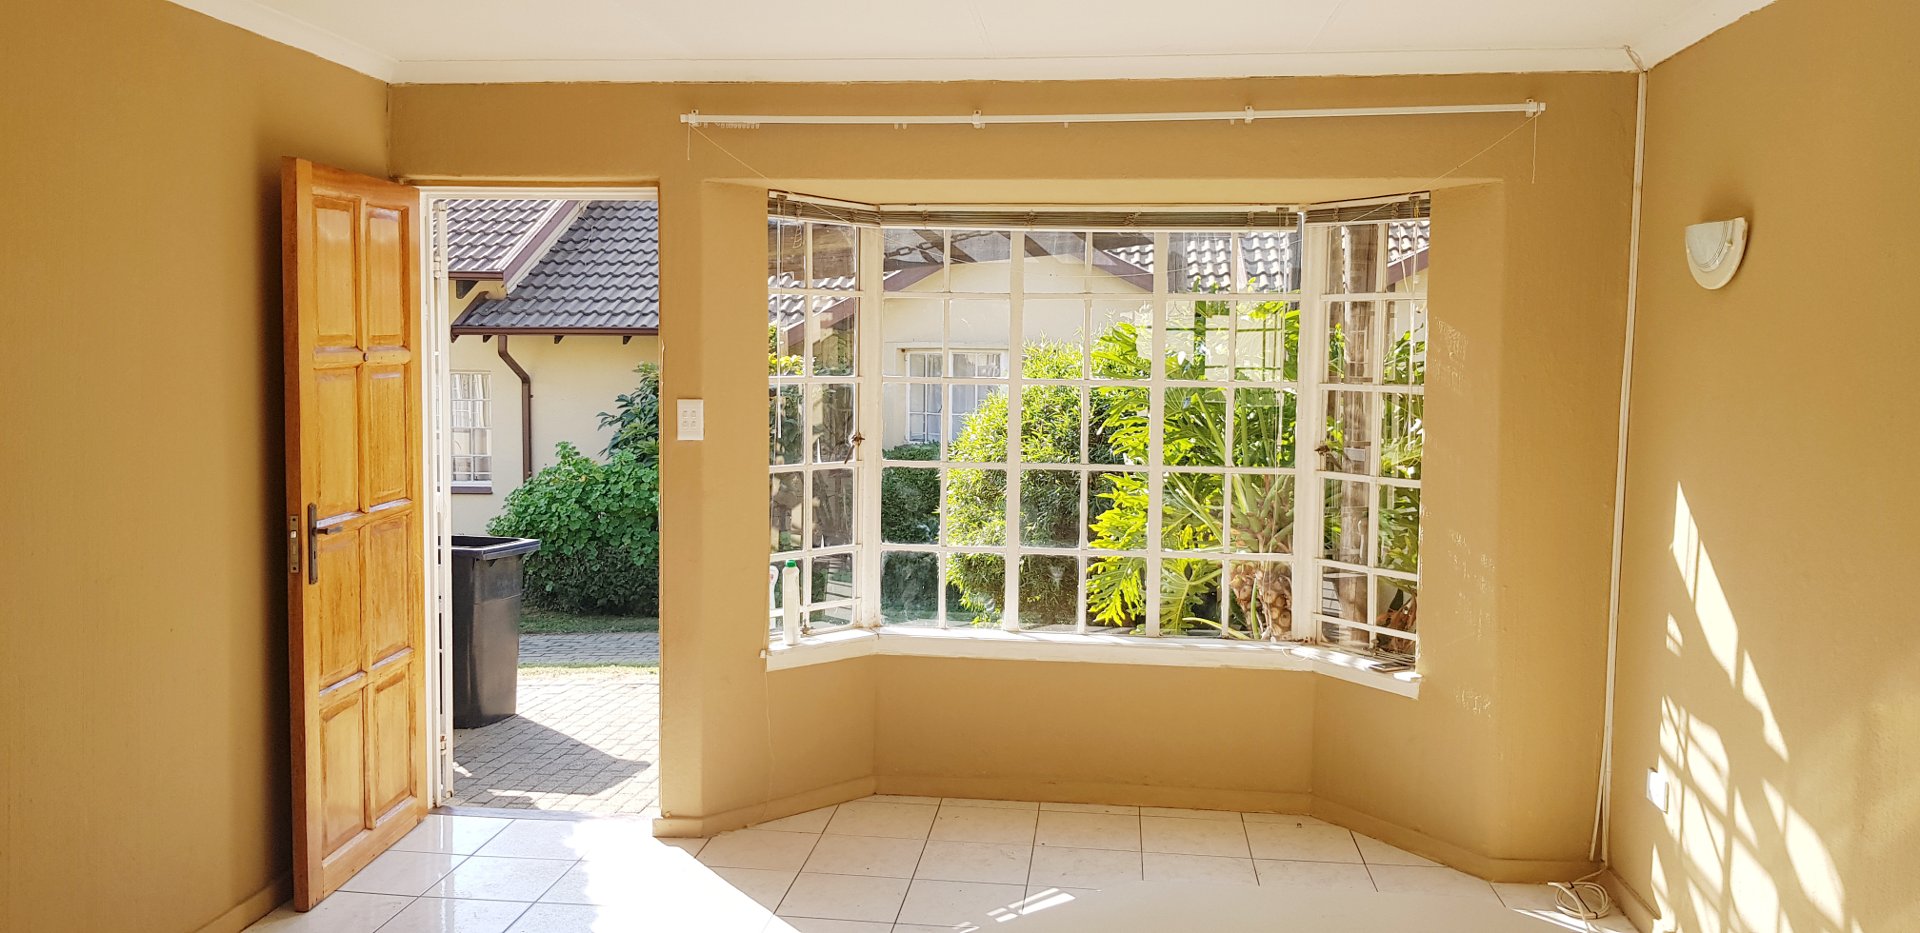 To Let 1 Bedroom Property for Rent in Ormonde Gauteng